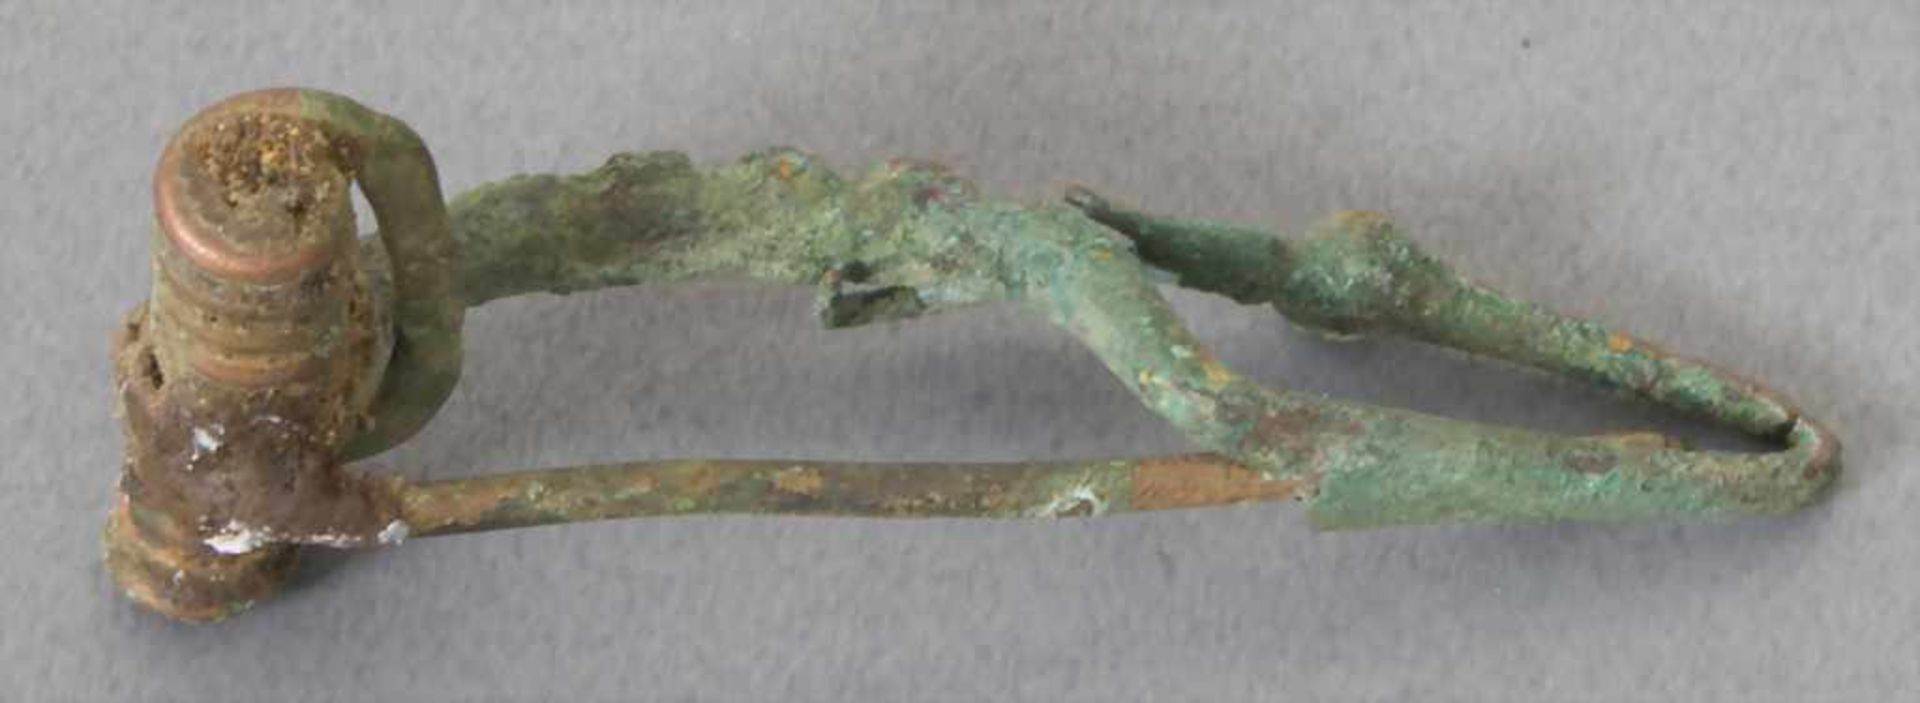 Keltische Fibel / A celtic fibulaMaterial: Bronze,Länge: 3,9 cm,Zustand: gut, alt restauriert, - Bild 3 aus 3